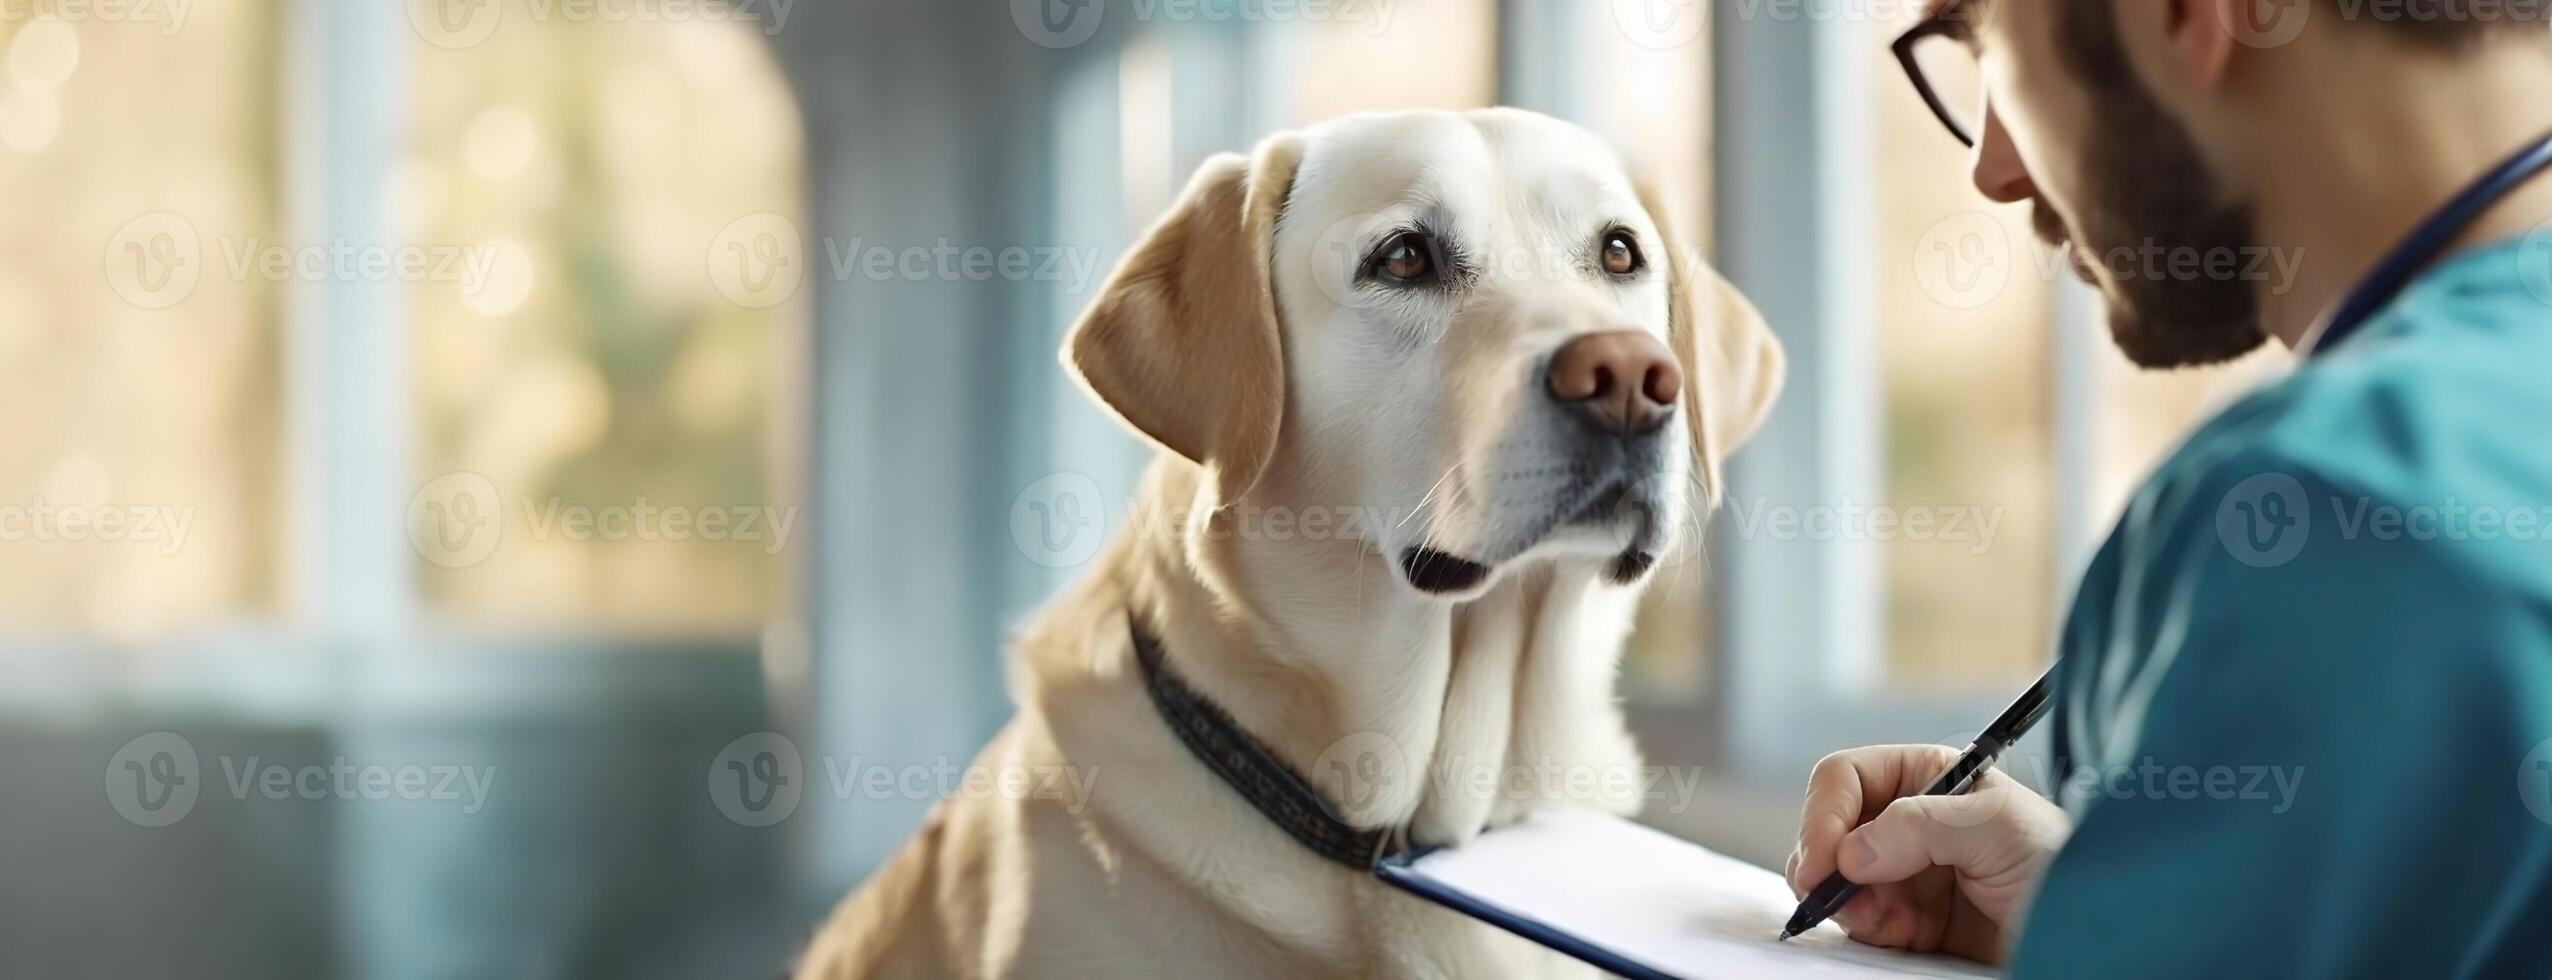 ai genererad labrador utseende uppmärksamt på en veterinär. hund blickar på läkare, ögonblick av förtroende och vård fångad i en klinik miljö, reflekterande de obligation mellan djur och människor. foto